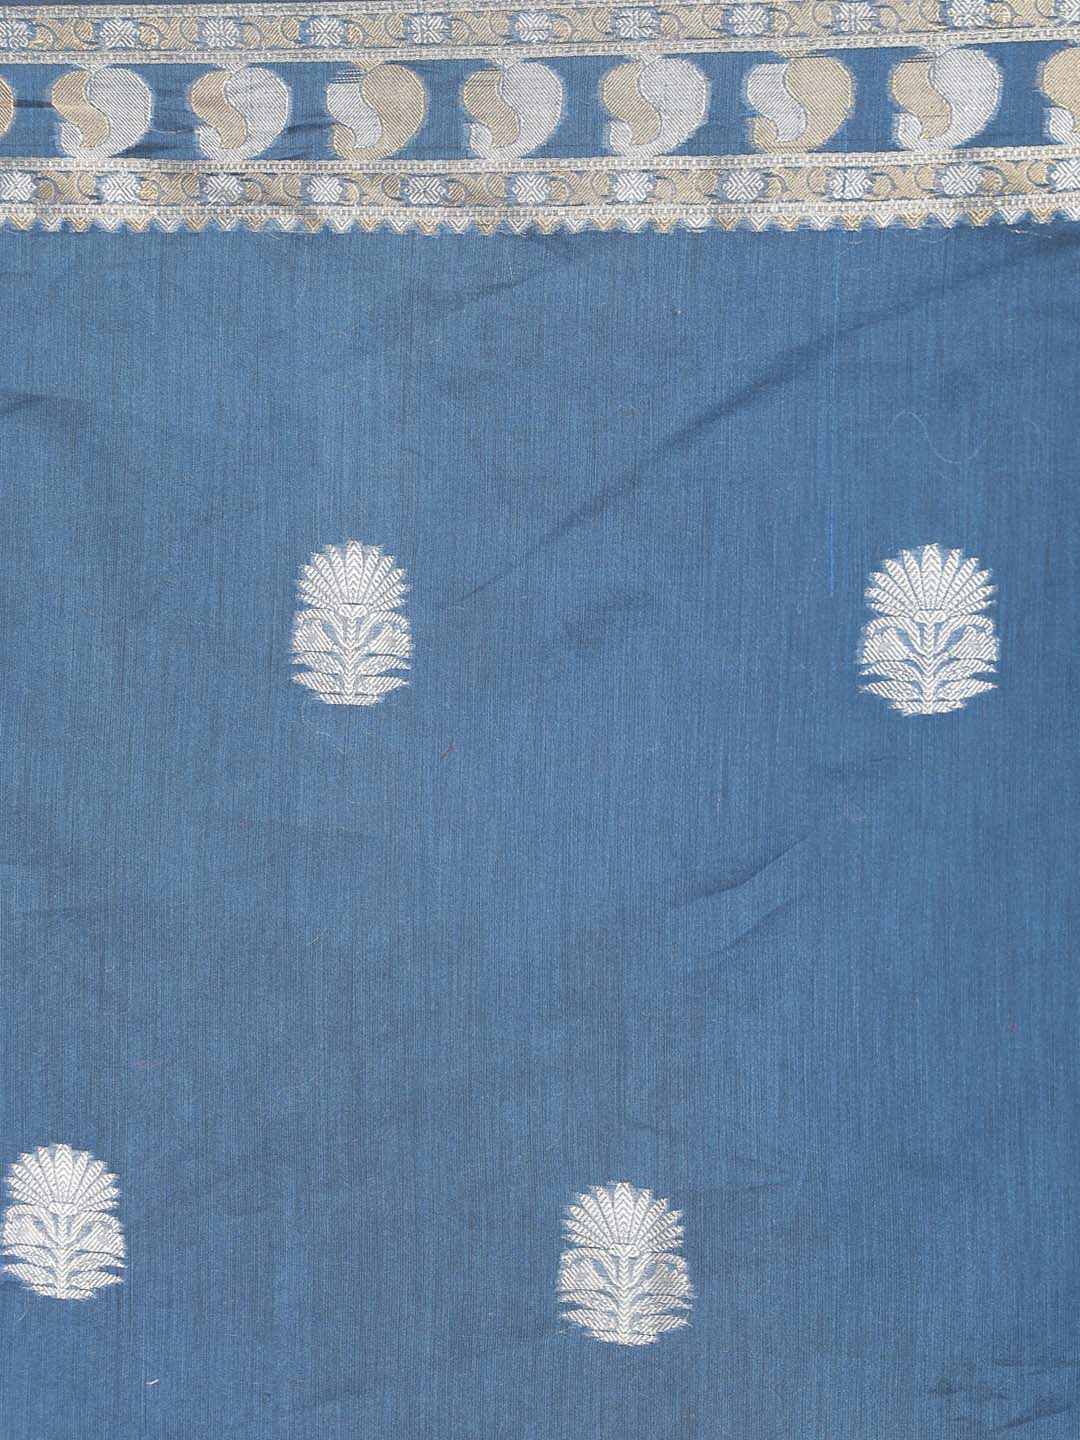 Indethnic Banarasi Blue Woven Design Daily Wear Saree - Saree Detail View